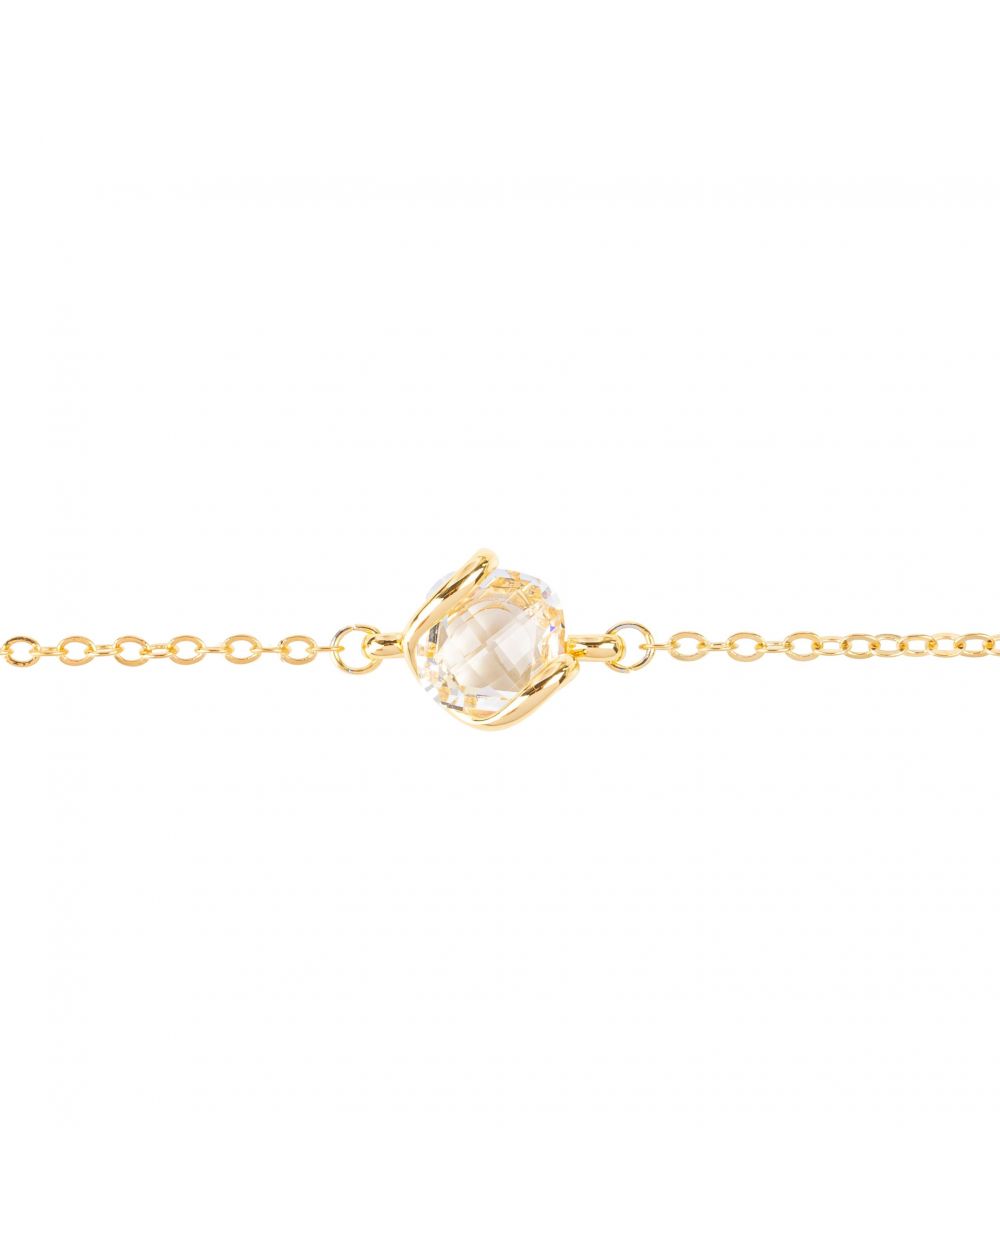 Andrea Marazzini bijoux - Bracelet cristal Swarovski Mini Crystal